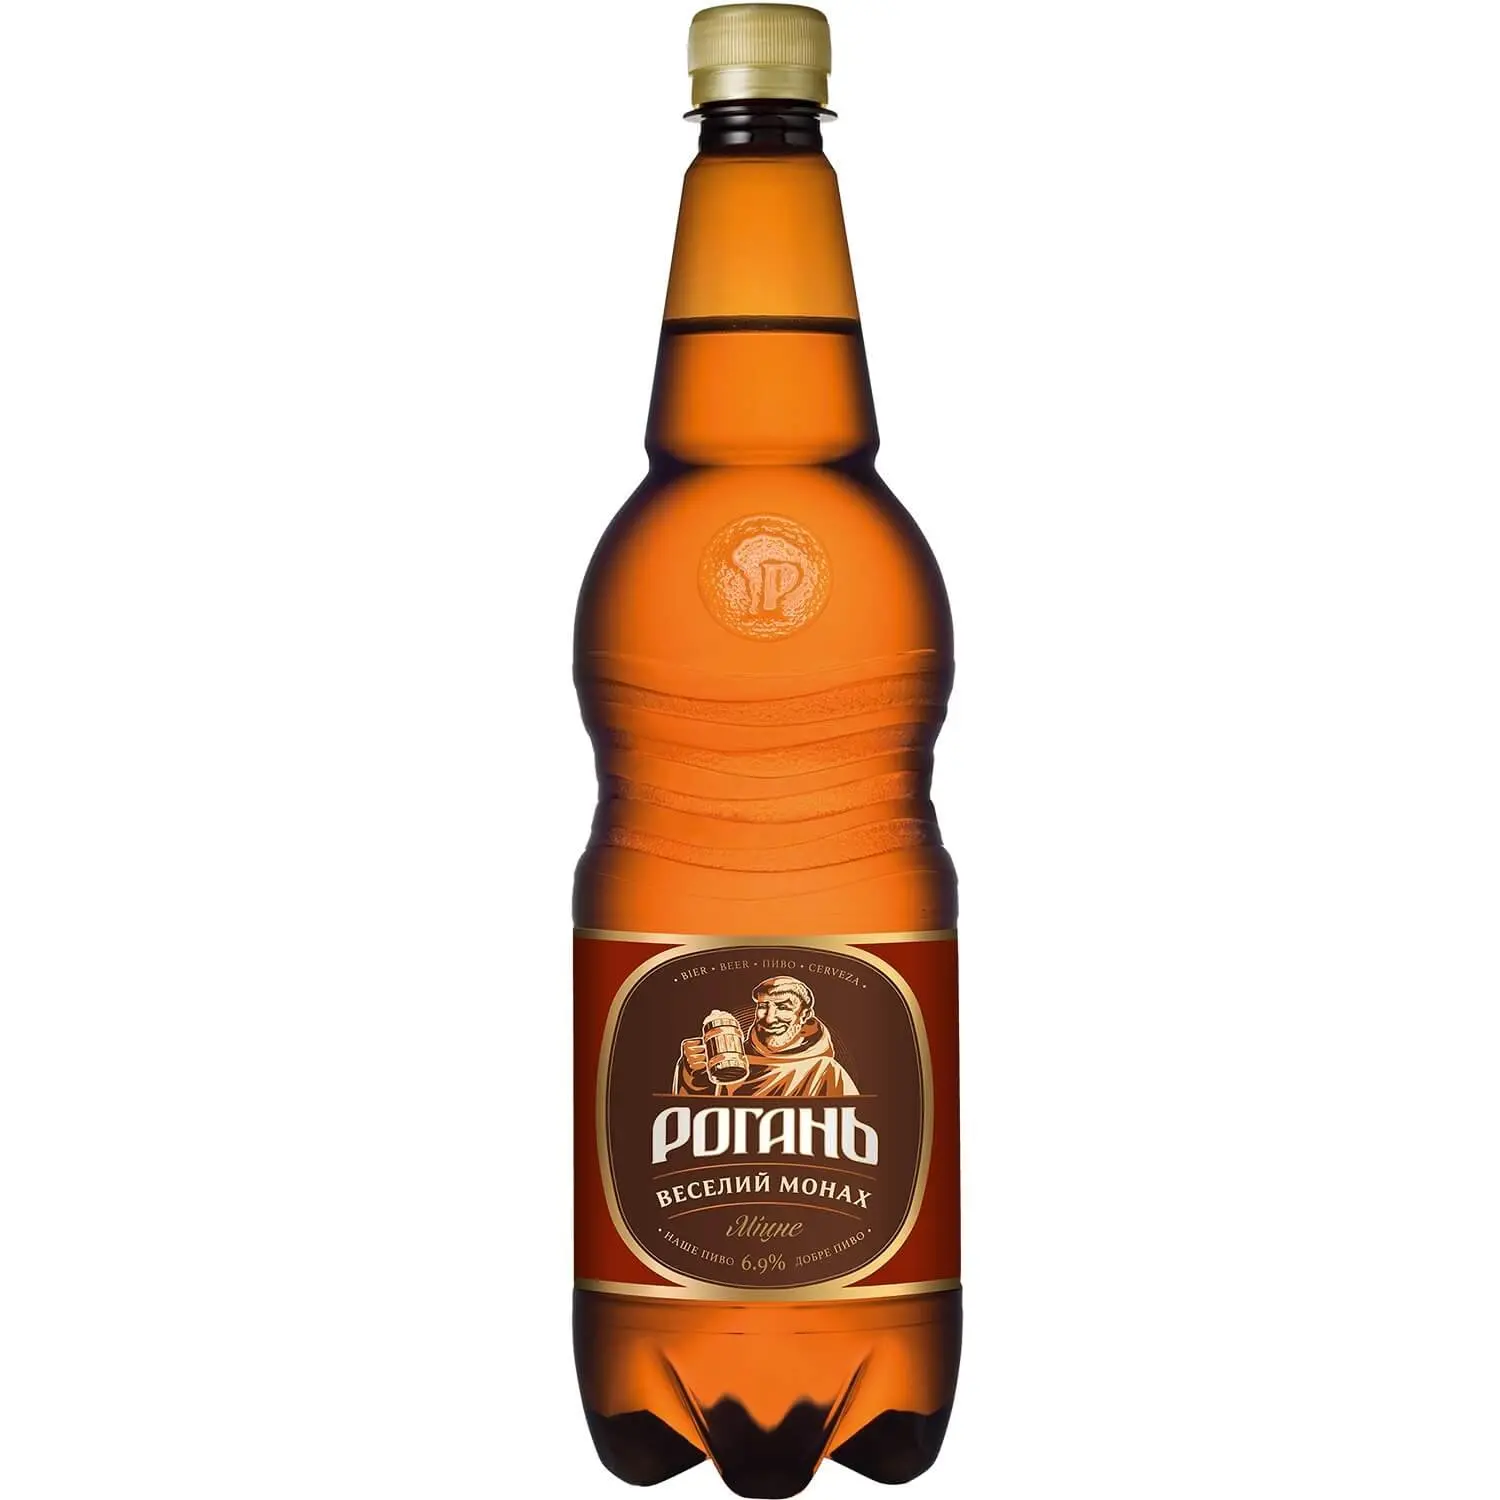 Пиво Рогань Веселый монах, 6,9%, 1 л